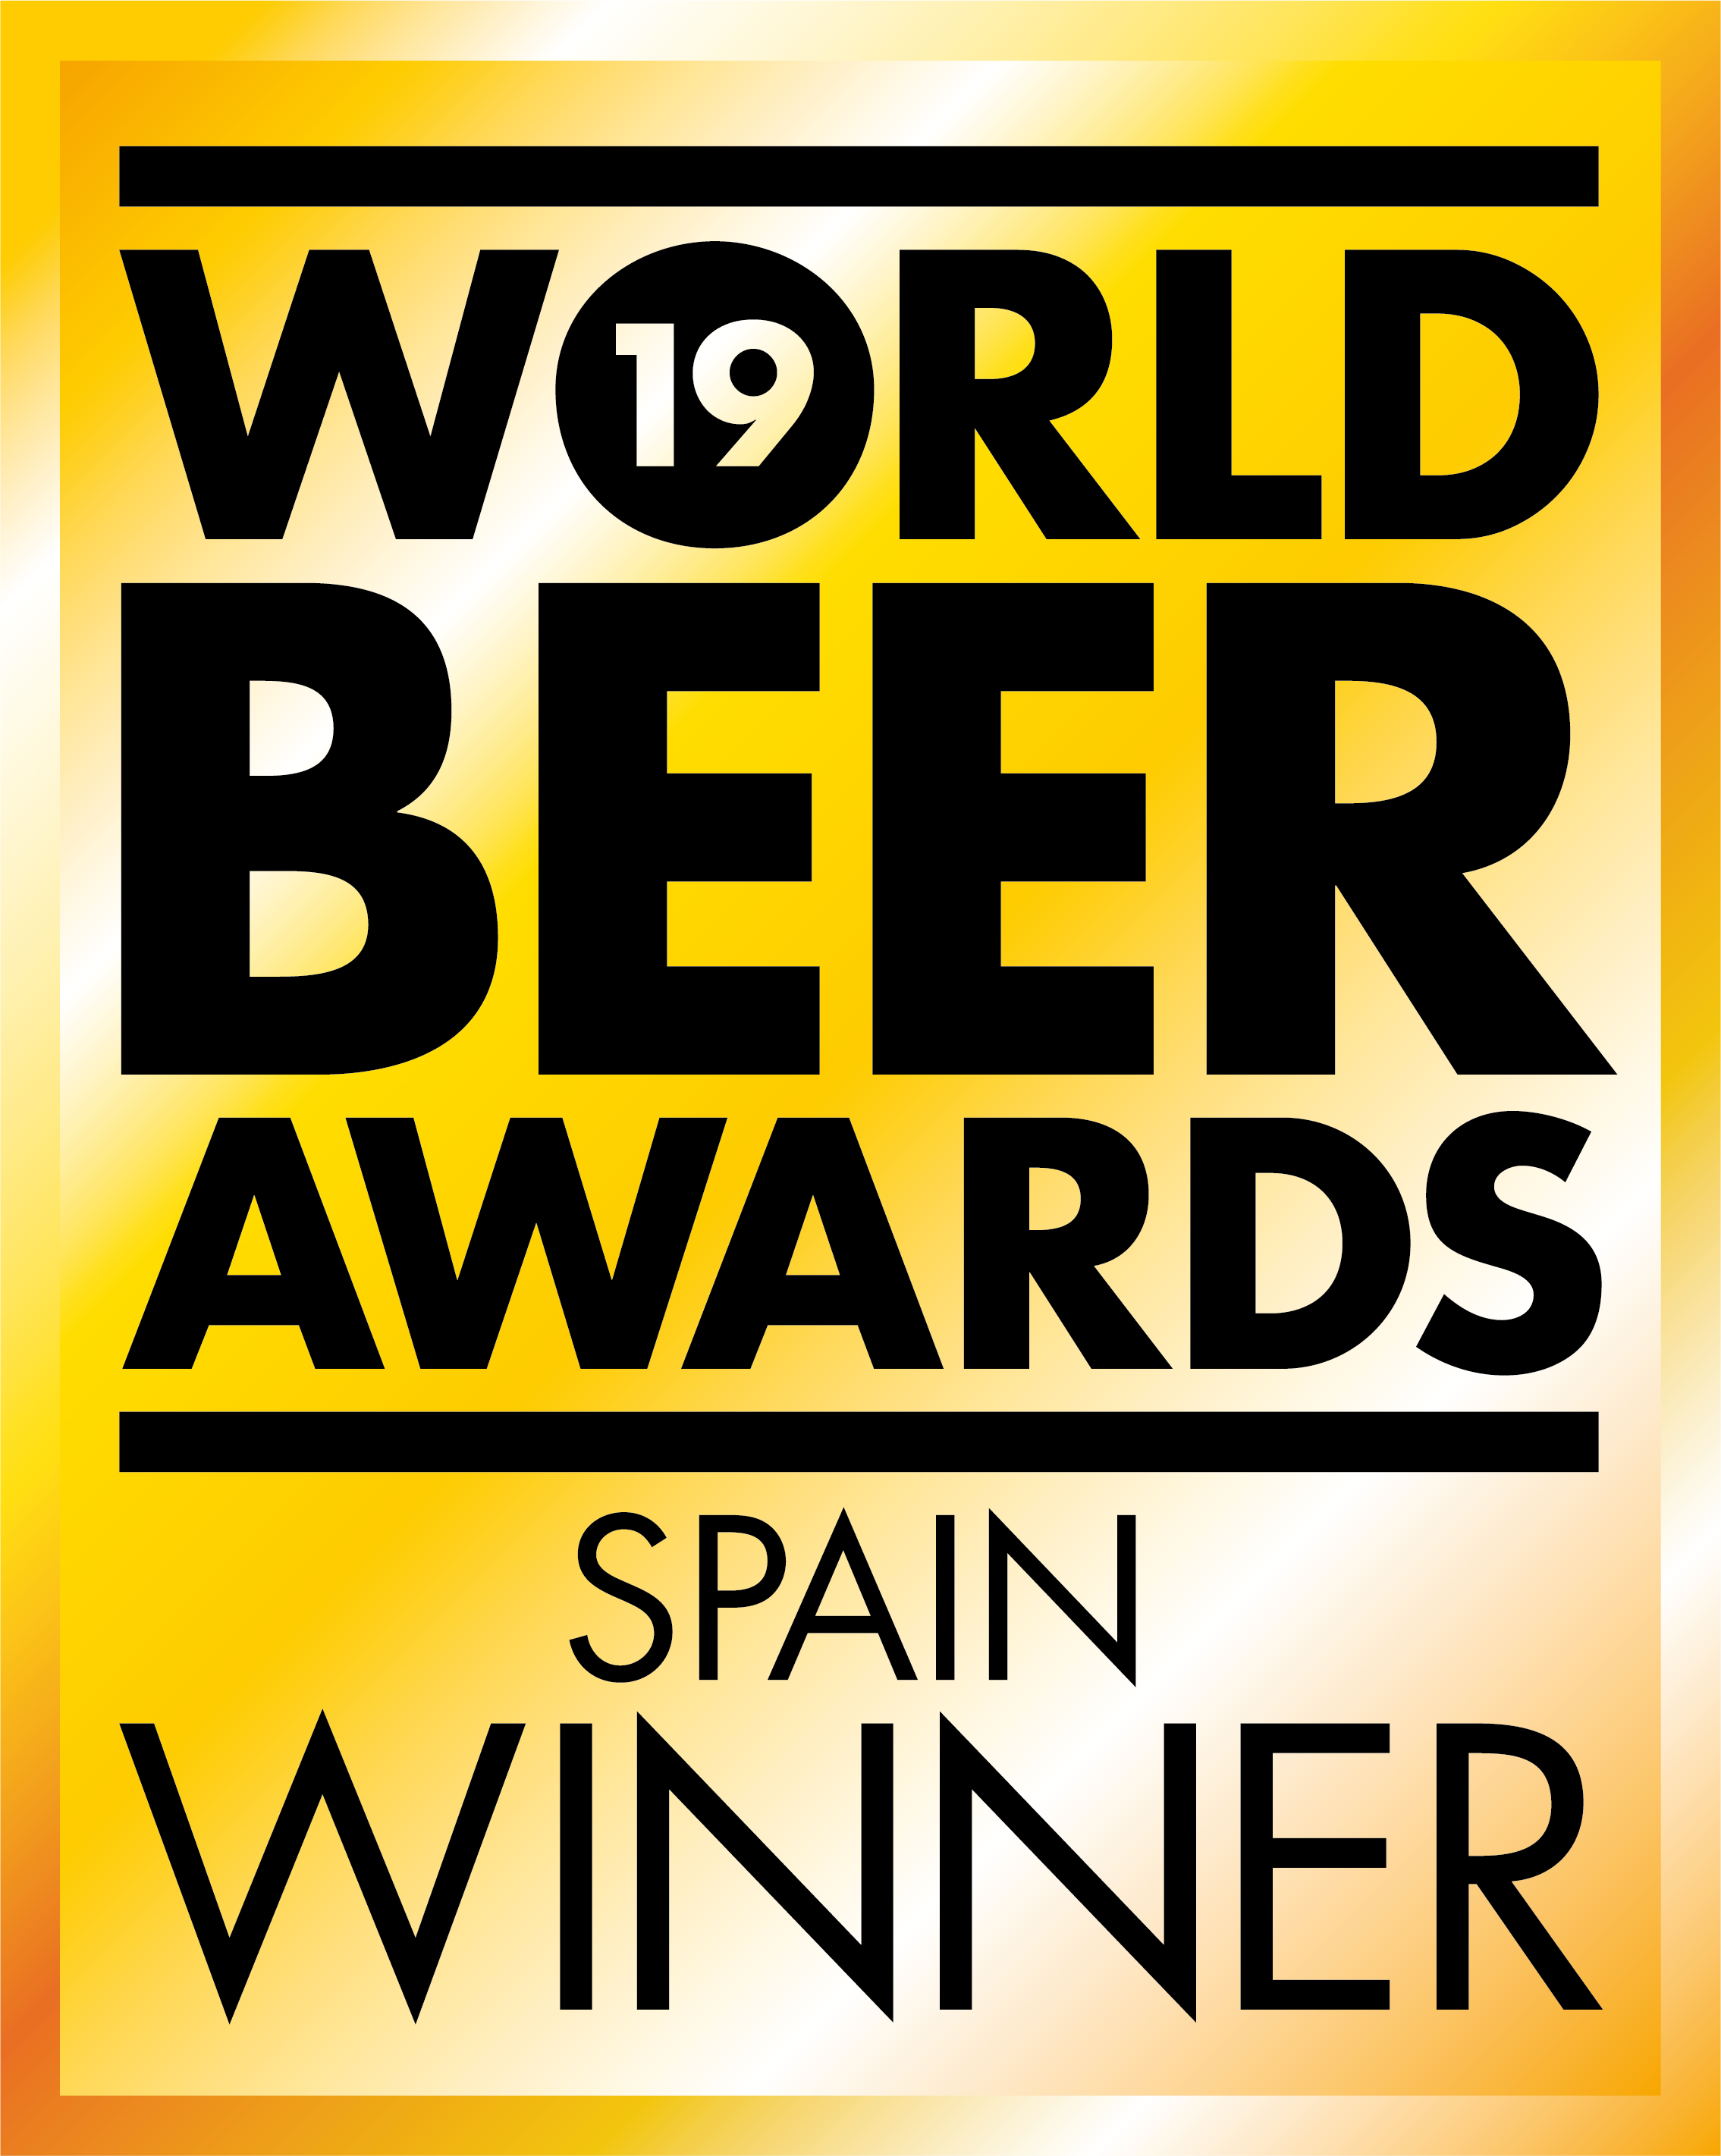 Mejor Cerveza Española envecida en barrica